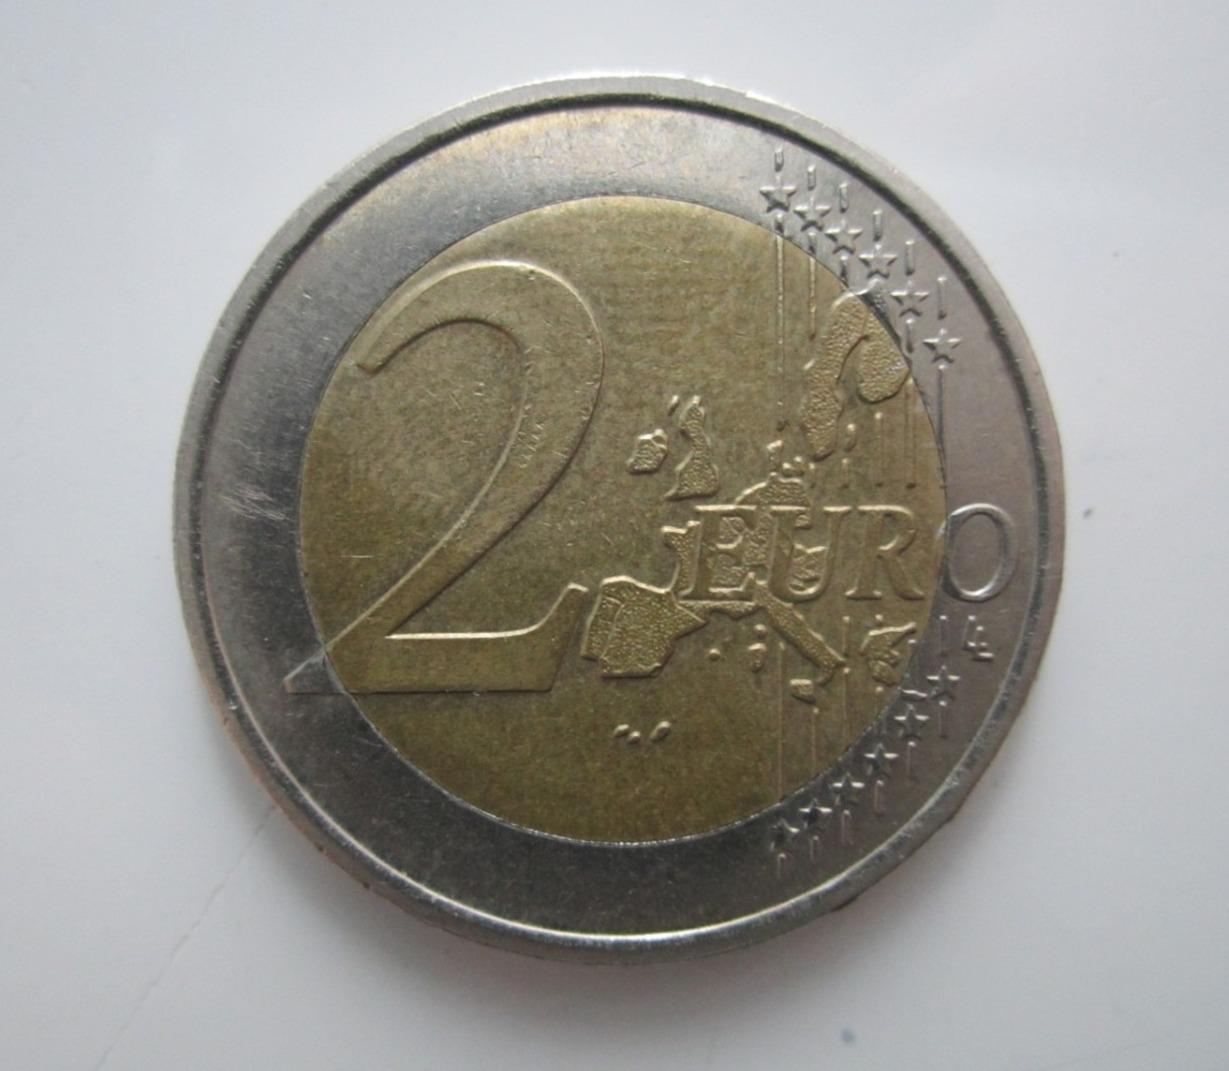 troc de troc rare 2 euros grecque grèce avec le "s" finlande sur l'étoile 2002 image 2